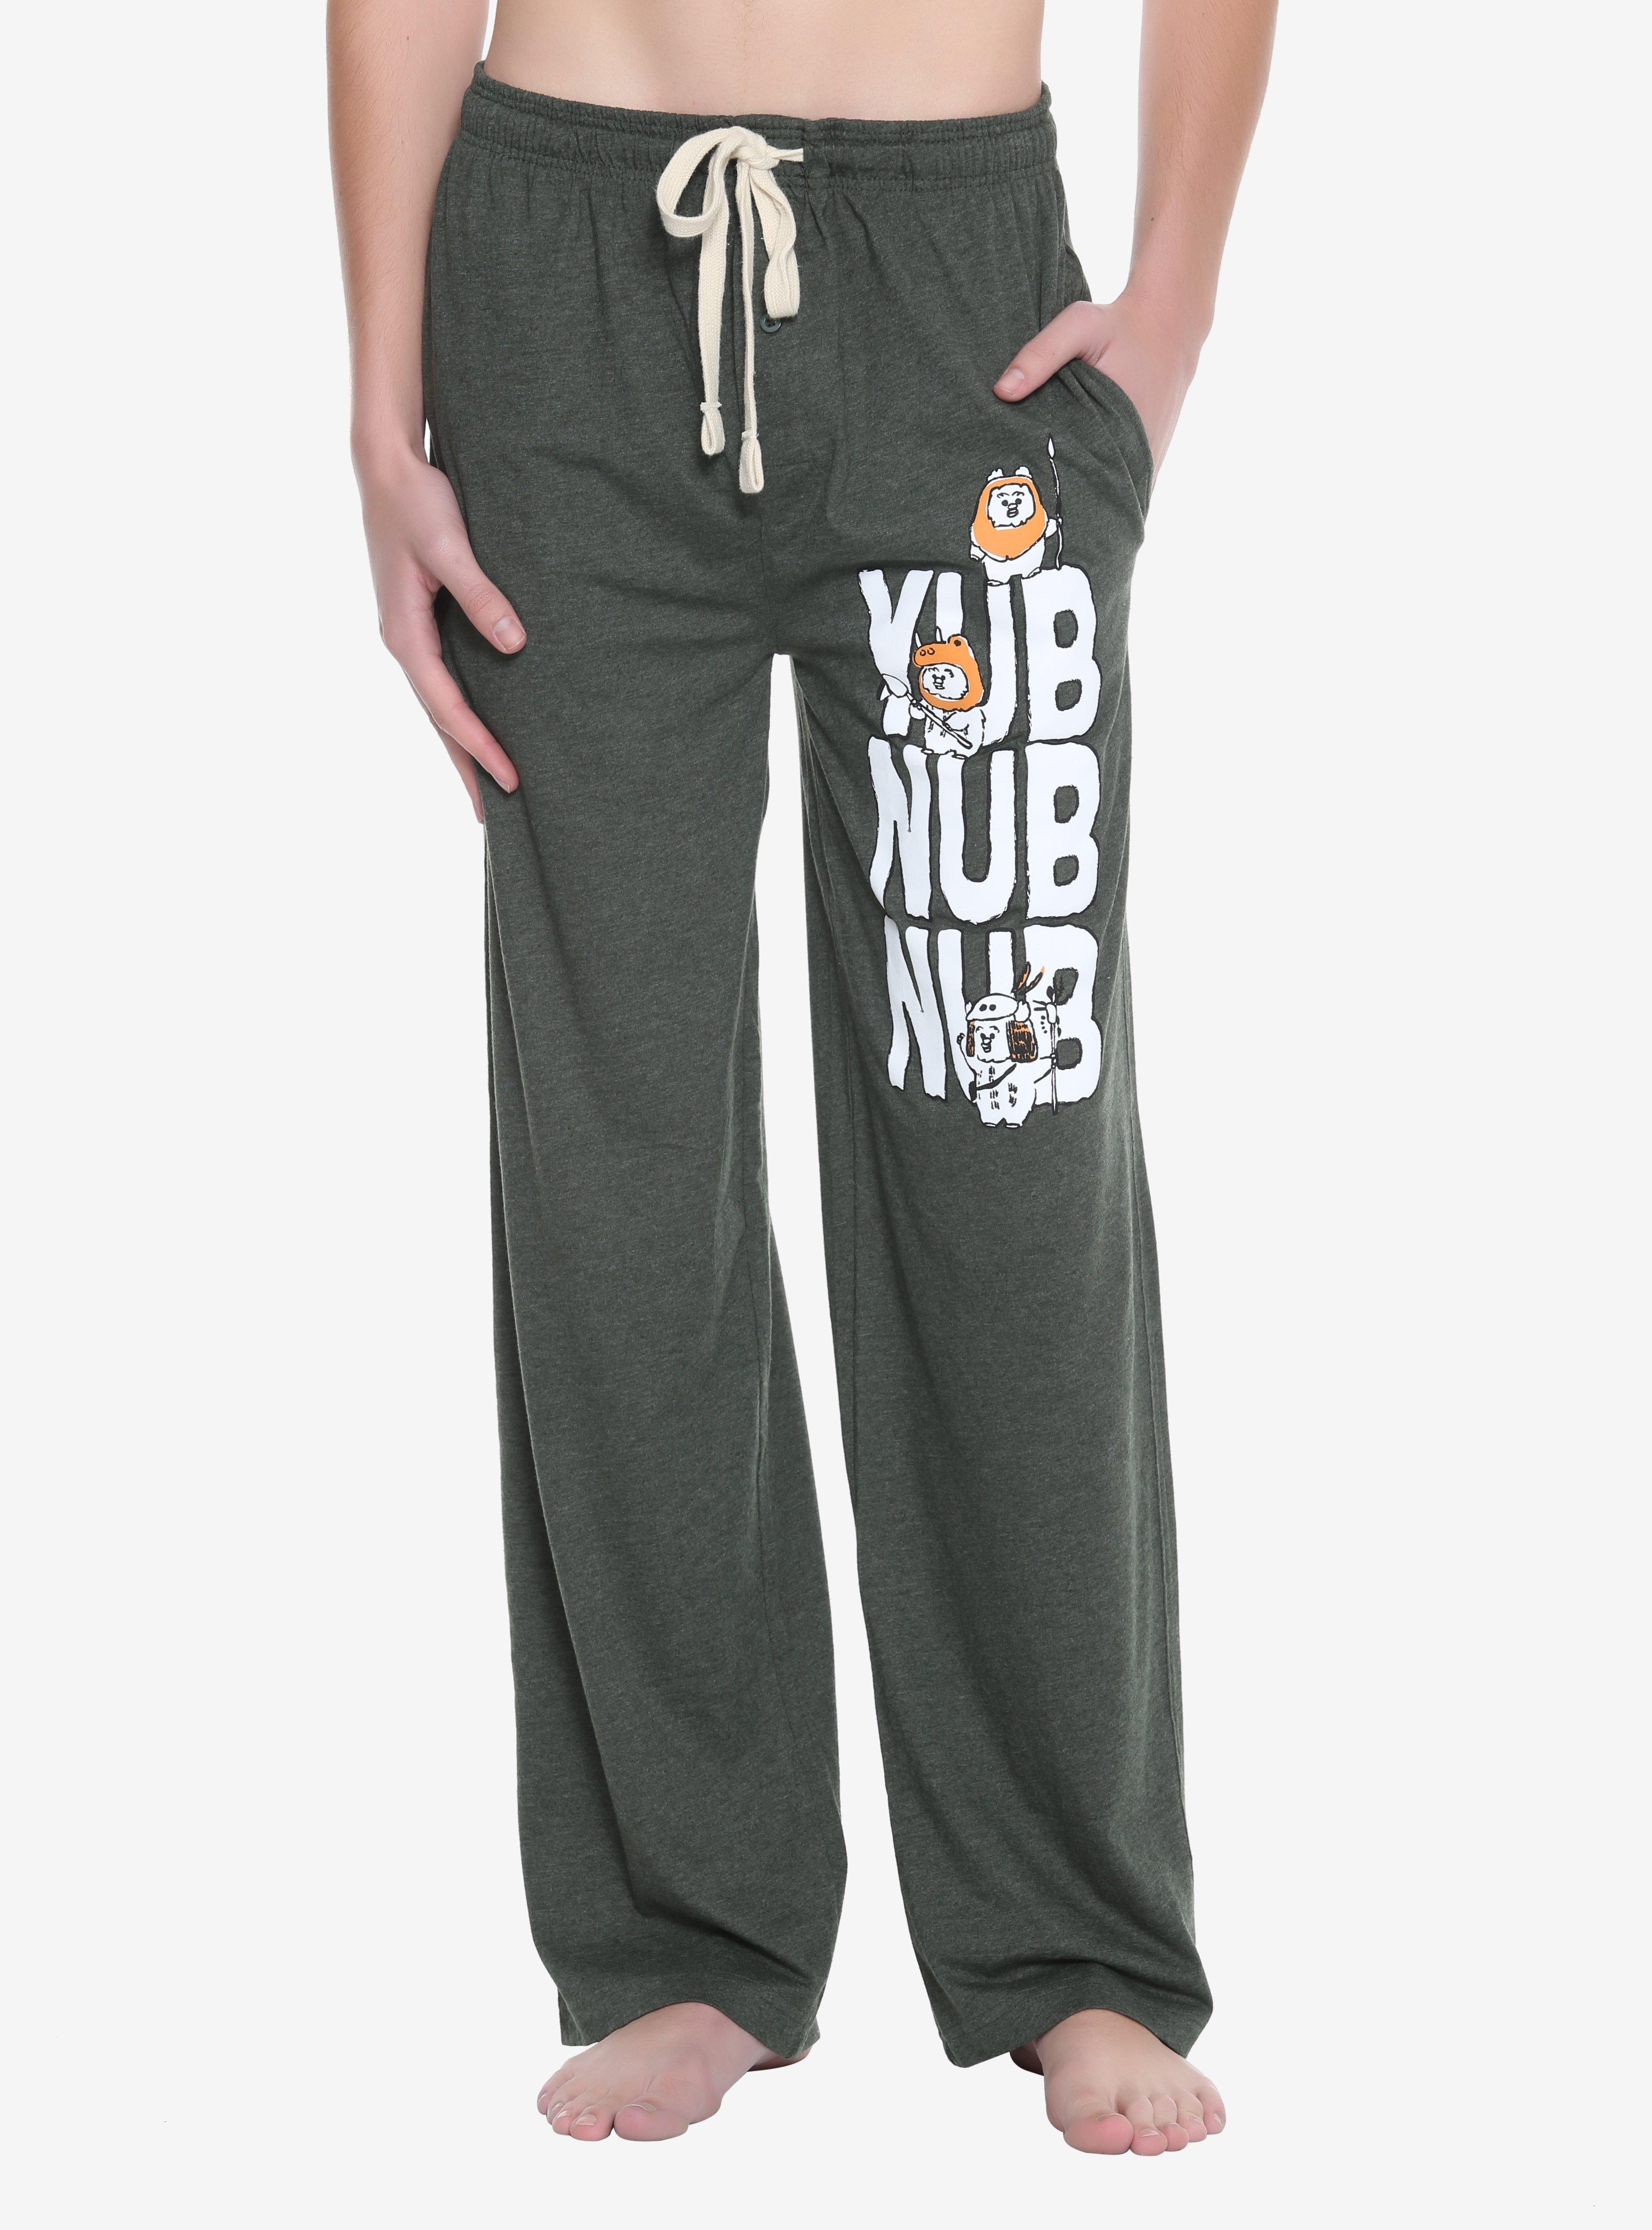 Star Wars Yub Nub Nub Guys Pajama Pants, DARK GREEN, hi-res